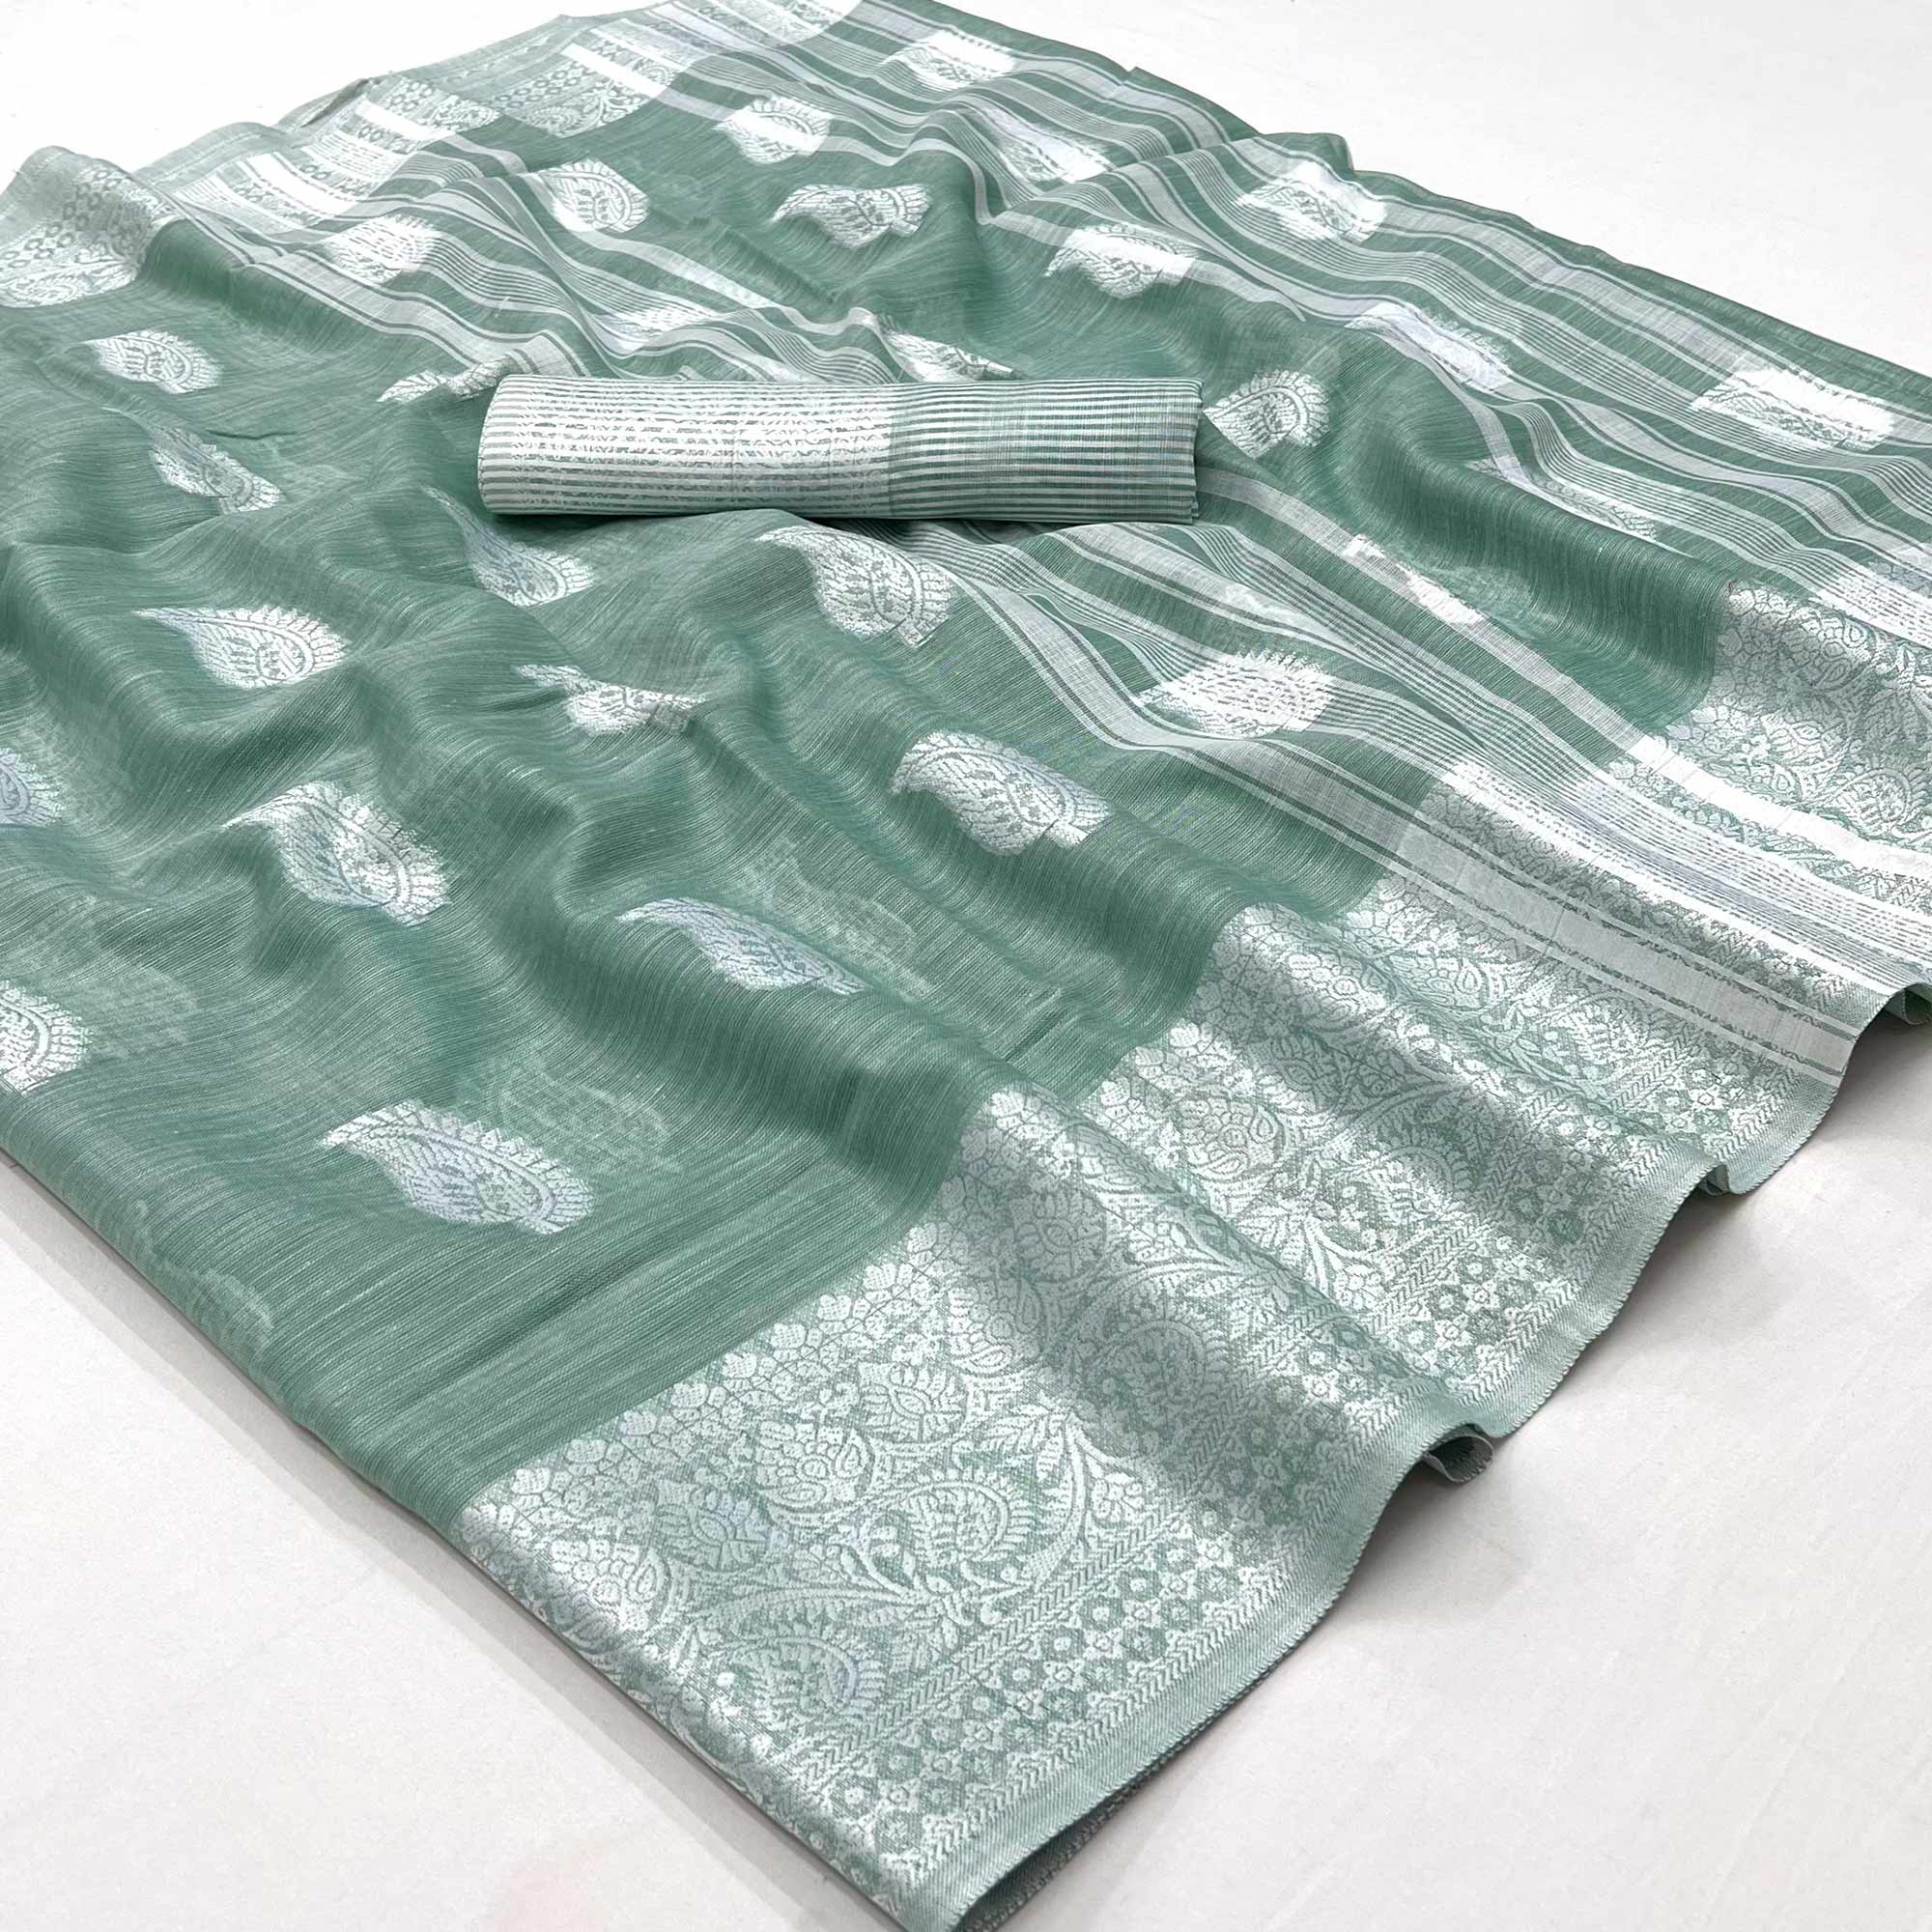 Green Woven Linen Saree